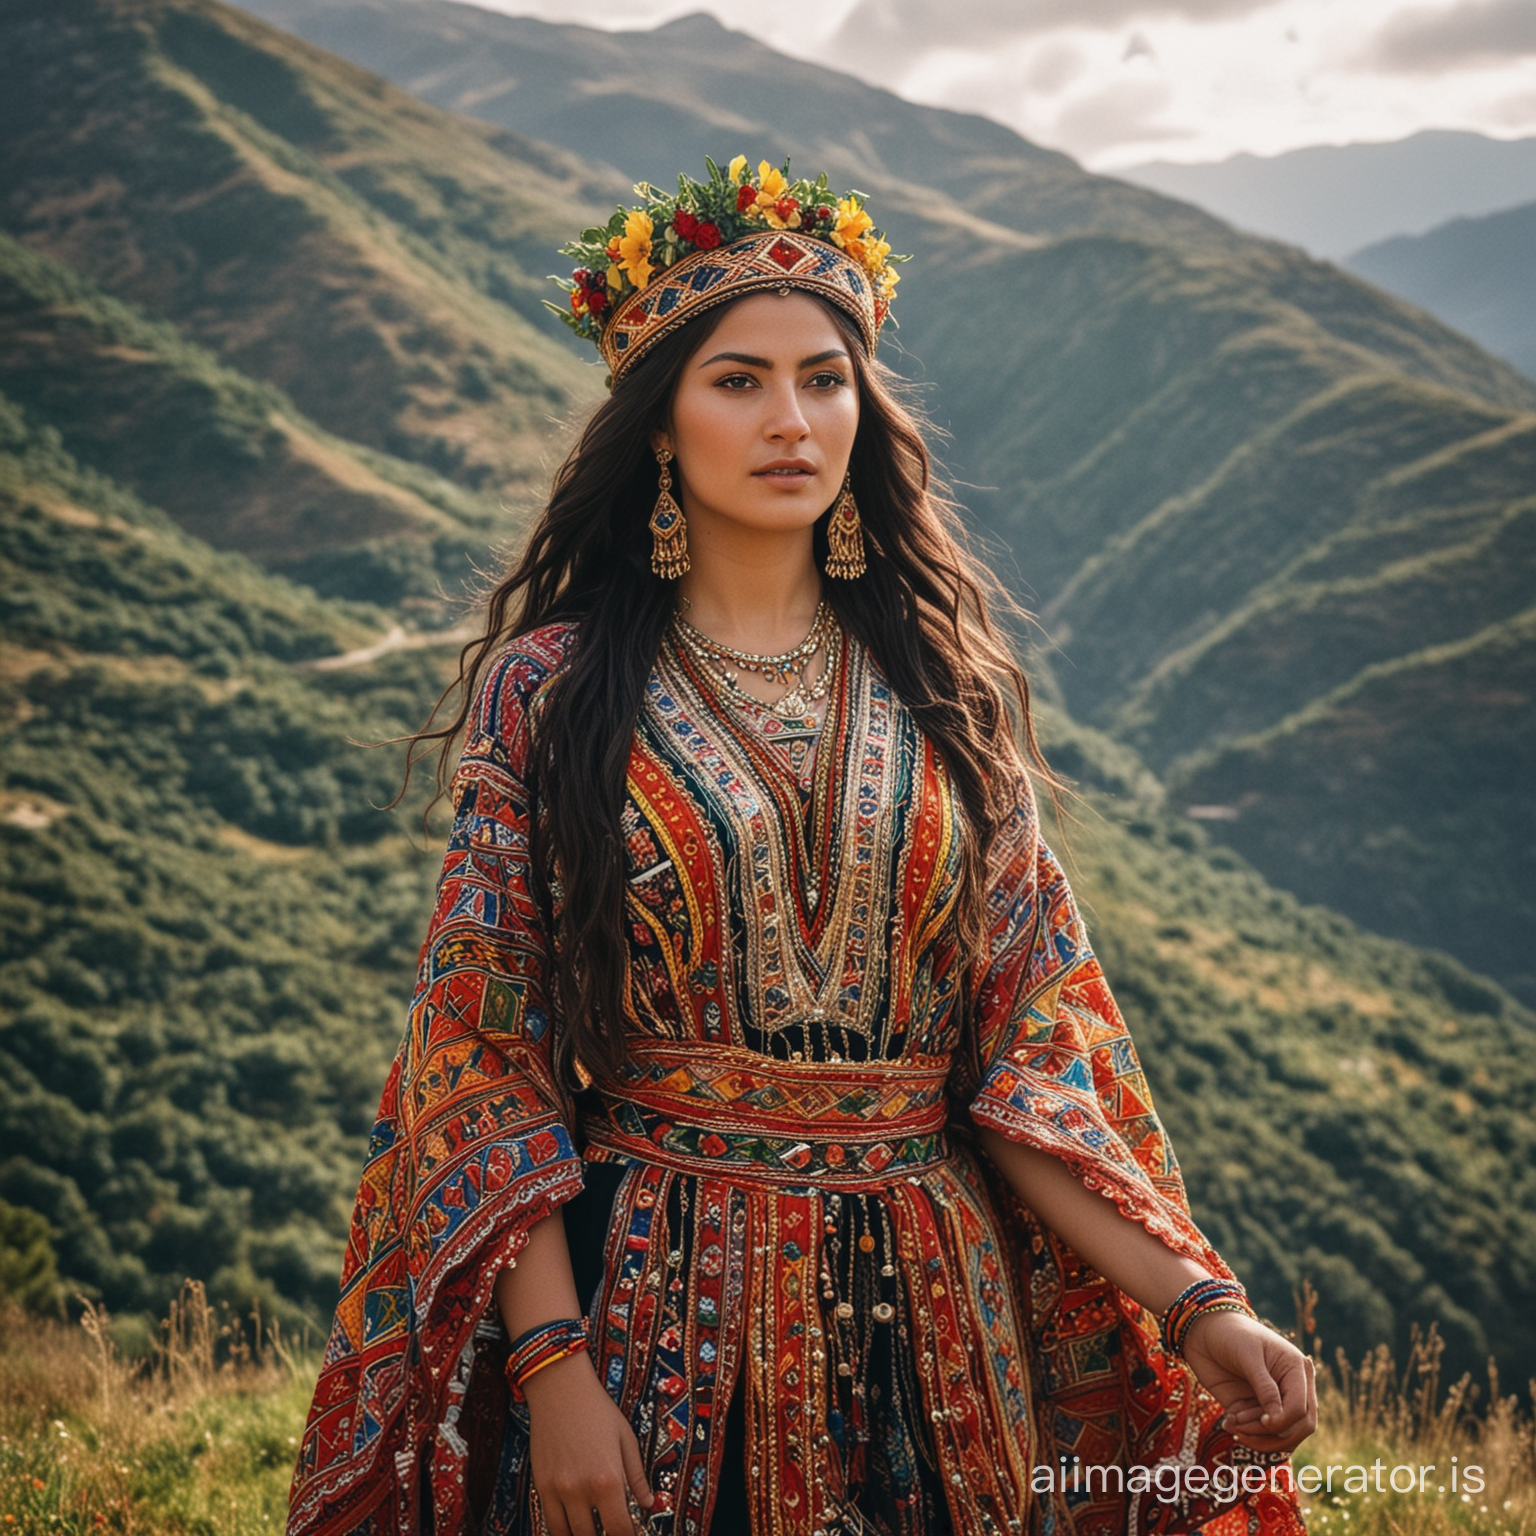 Une photo en couleur d'une belle femme kabyle debout au sommet d'une montagne, portant une magnifique robe kabyle traditionnelle. La robe est richement ornée de motifs colorés et de broderies complexes, mettant en valeur la beauté de la culture kabyle. La femme, avec ses longs cheveux noirs ondulant au vent, porte une couronne de fleurs fraîches sur sa tête, lui conférant une aura de noblesse et de grâce. Derrière elle, les montagnes s'étendent à perte de vue, créant un paysage à couper le souffle. Son regard est empreint de fierté et de détermination, comme si elle était prête à conquérir le monde. Cette image évoque la puissance et la beauté de la culture kabyle, ainsi que la force et la résilience de ses femmes.